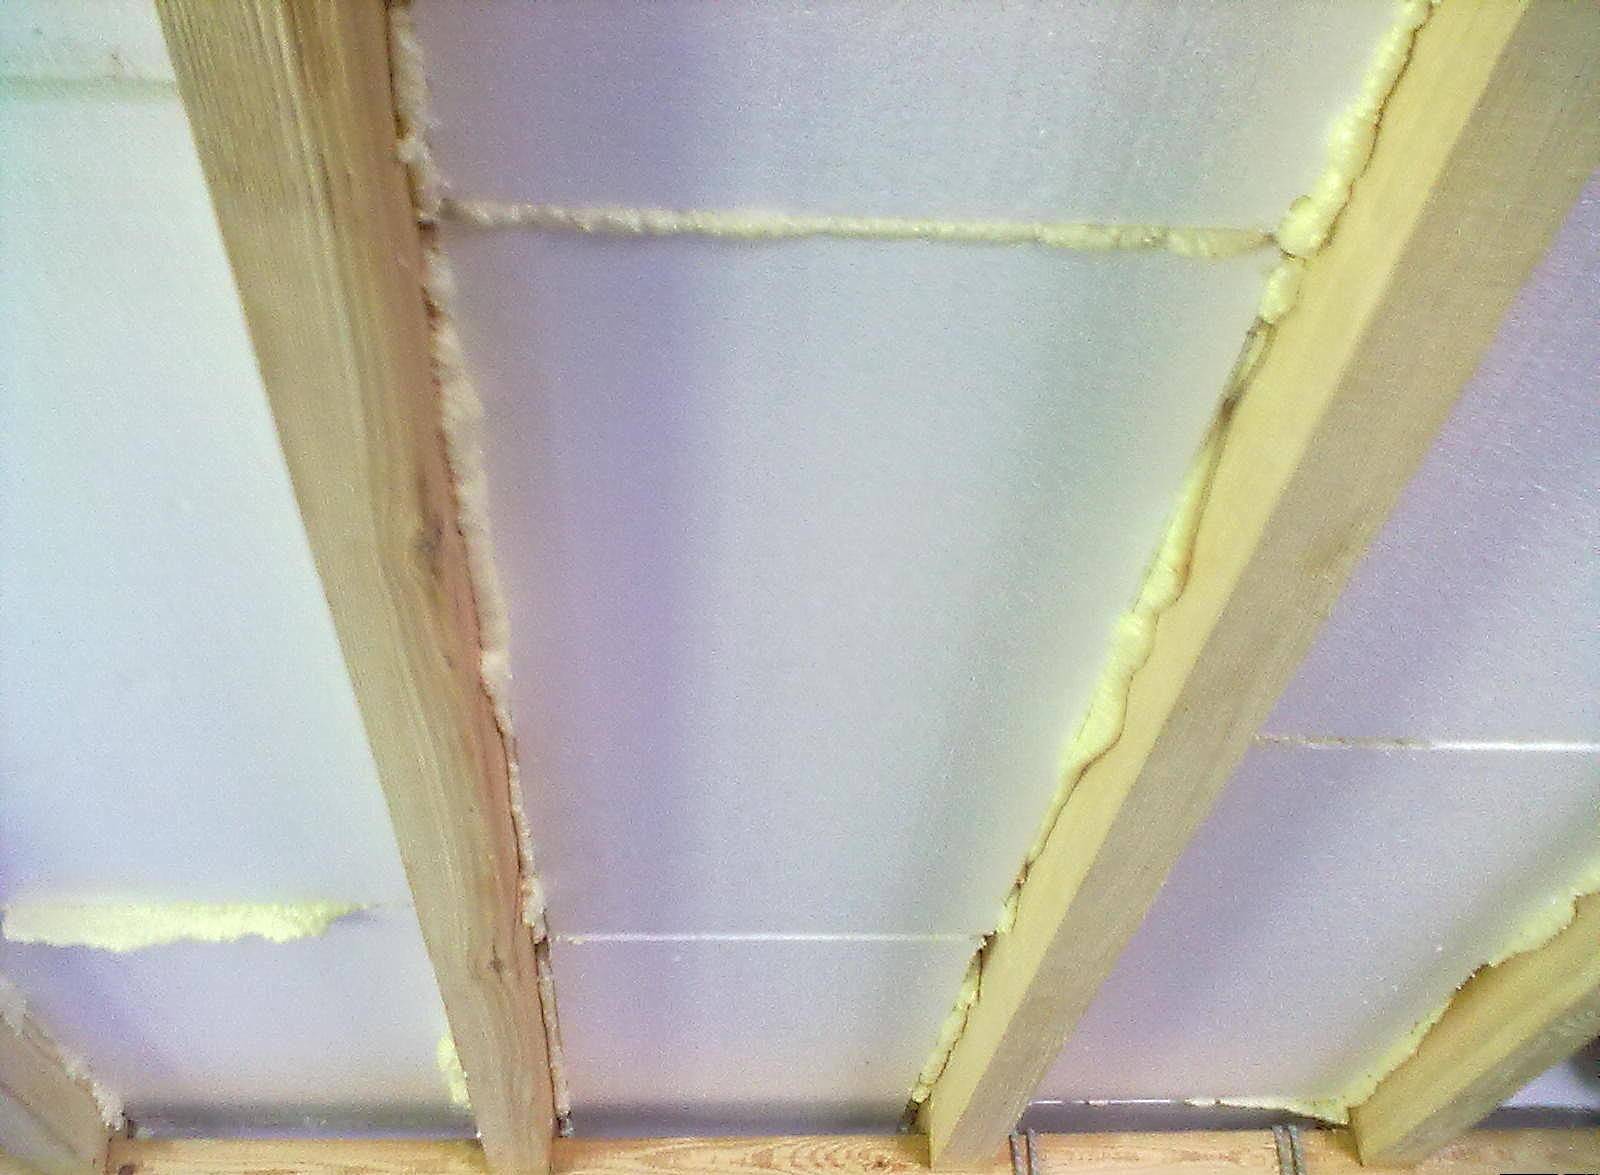 Как сделать утепление потолка изнутри своими руками, какой материал выбрать: пенопласт или минвату, детальное фото и видео